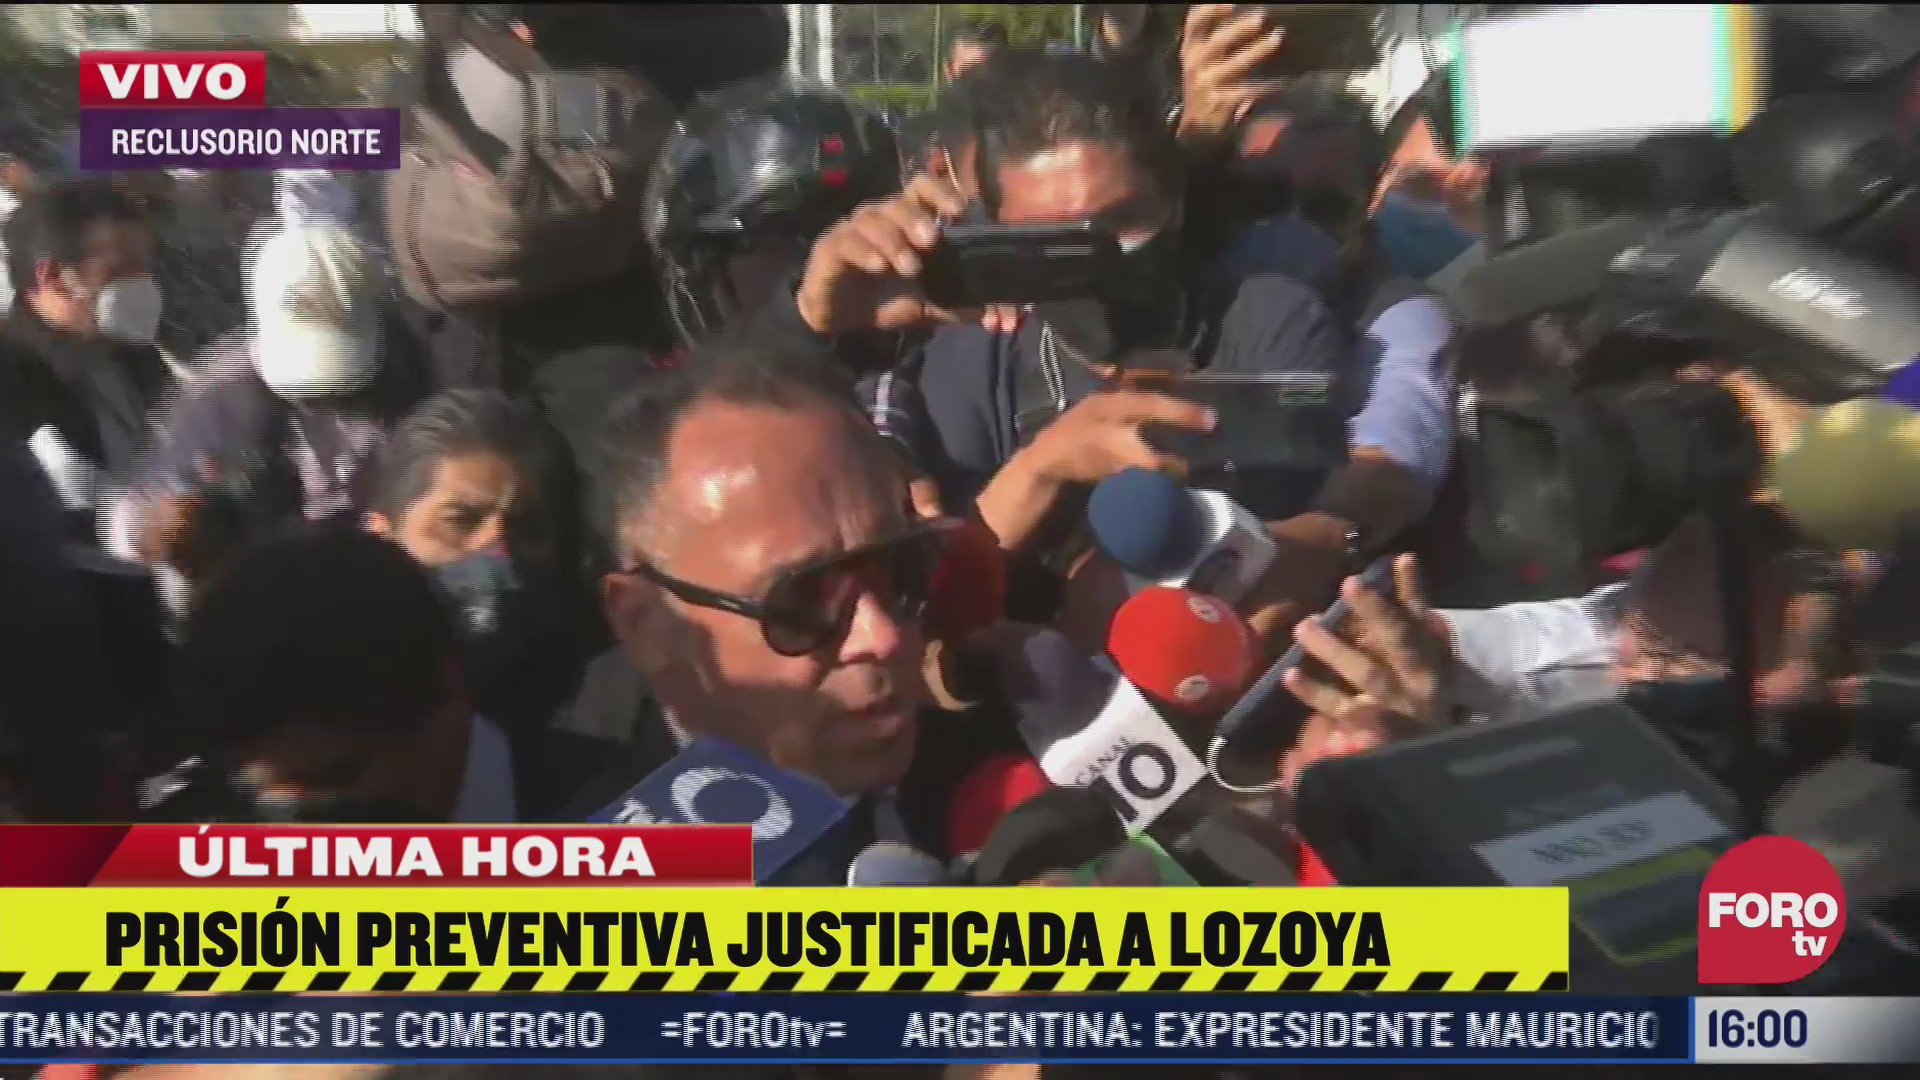 lozoya seguira cooperando con autoridades senala abogado